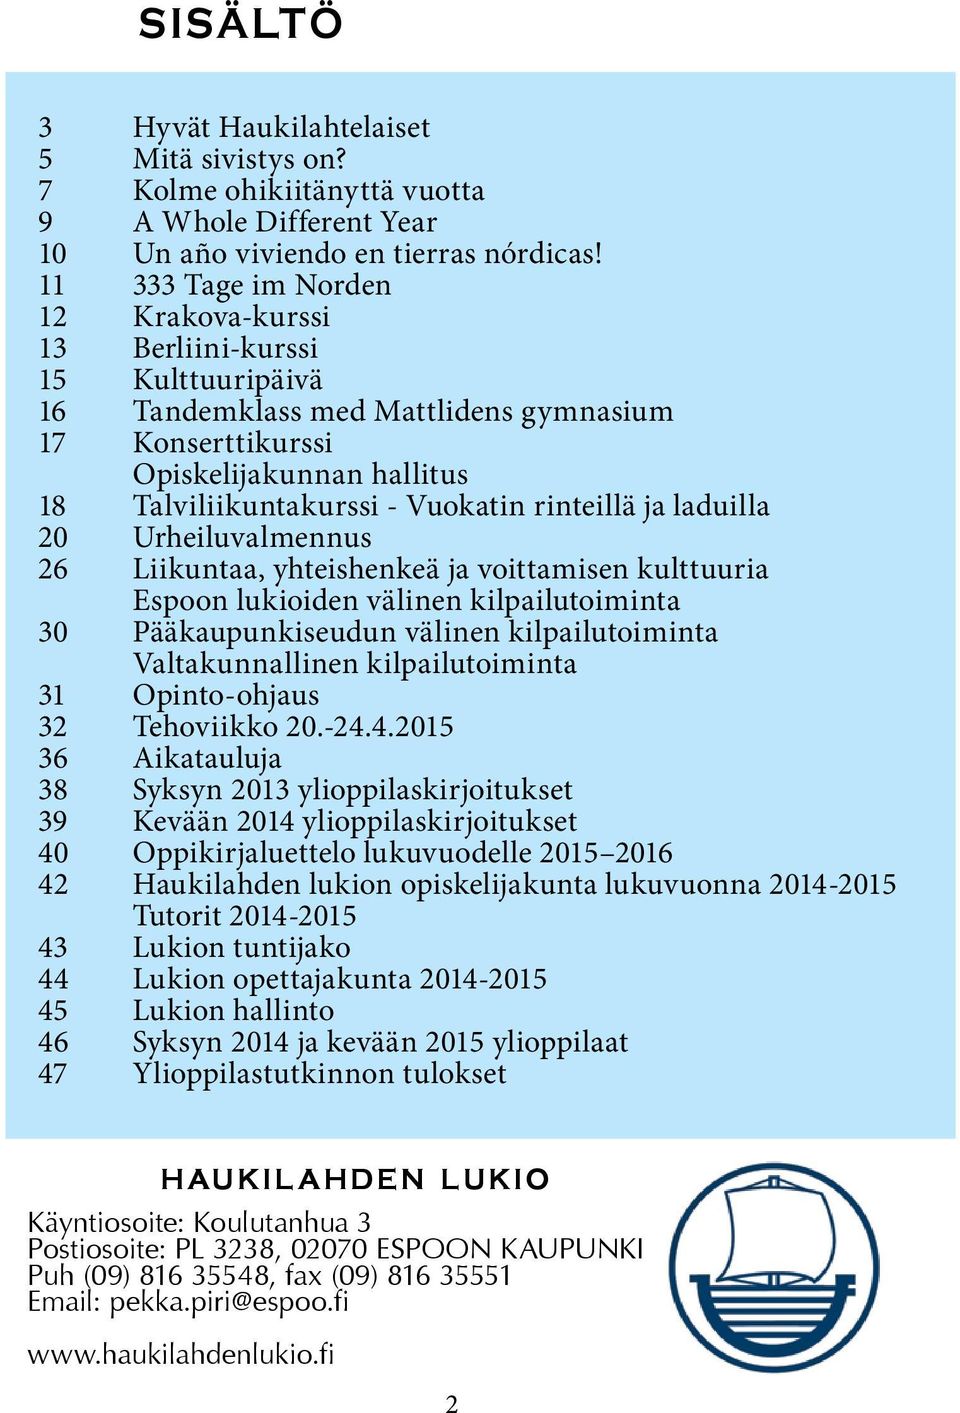 rinteillä ja laduilla 20 Urheiluvalmennus 26 Liikuntaa, yhteishenkeä ja voittamisen kulttuuria Espoon lukioiden välinen kilpailutoiminta 30 Pääkaupunkiseudun välinen kilpailutoiminta Valtakunnallinen